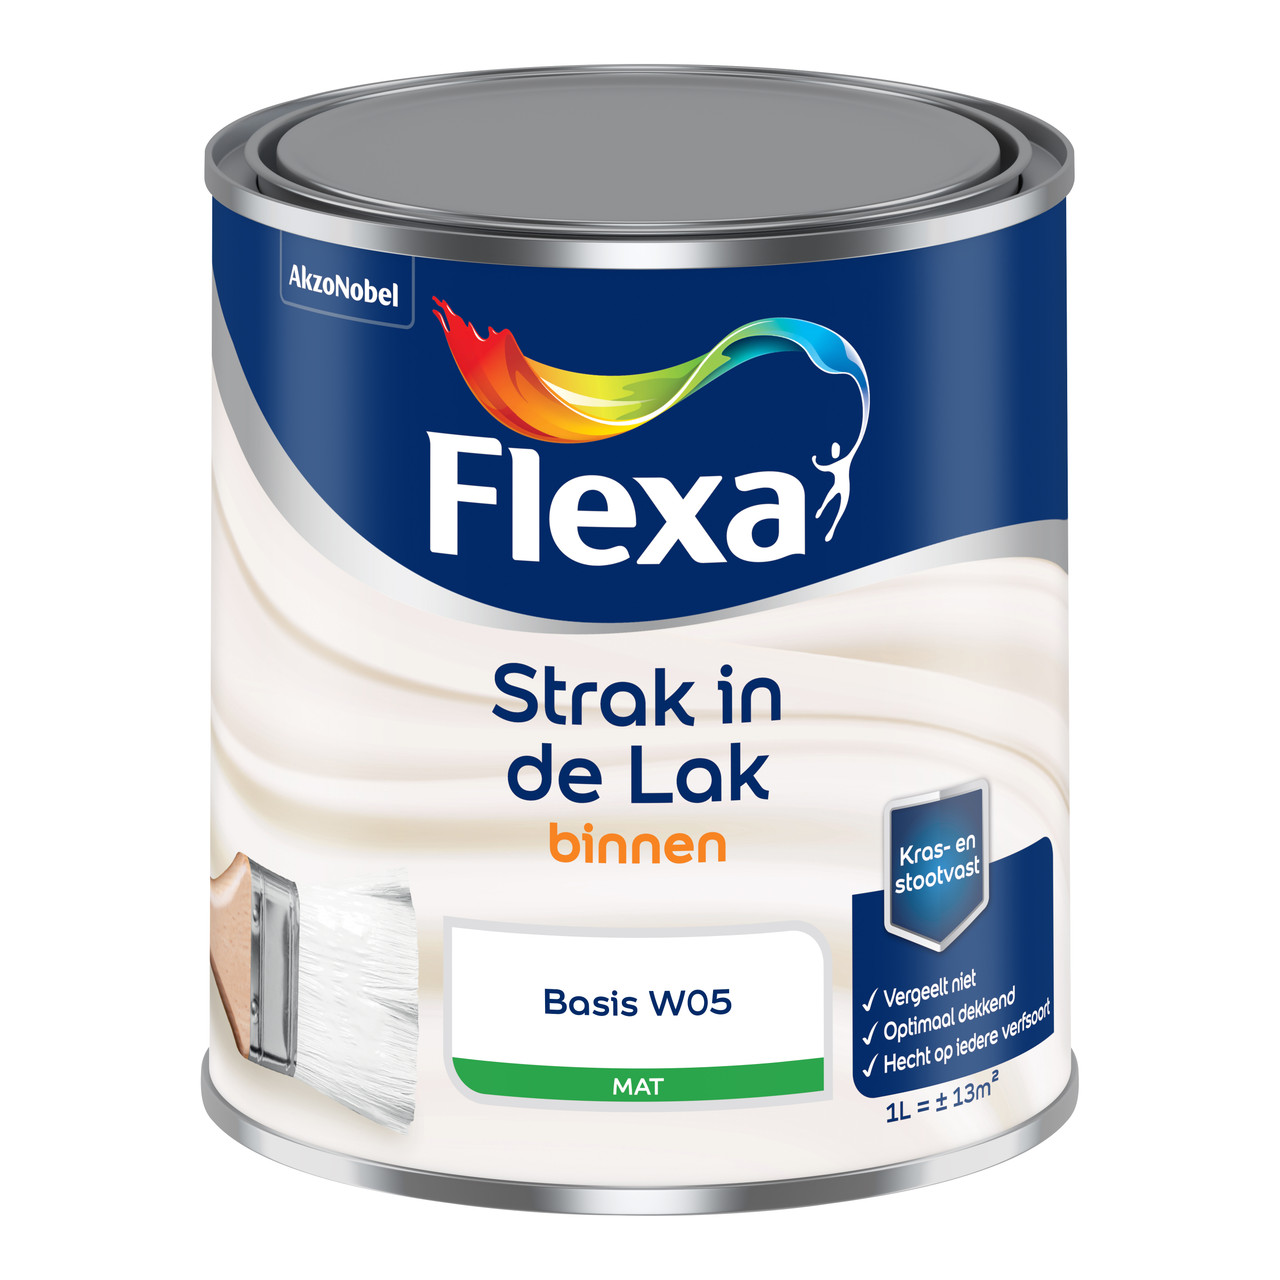 Postbode Wafel overdracht Flexa Strak in de Lak Binnenlak Mat | Flexa binnenlak